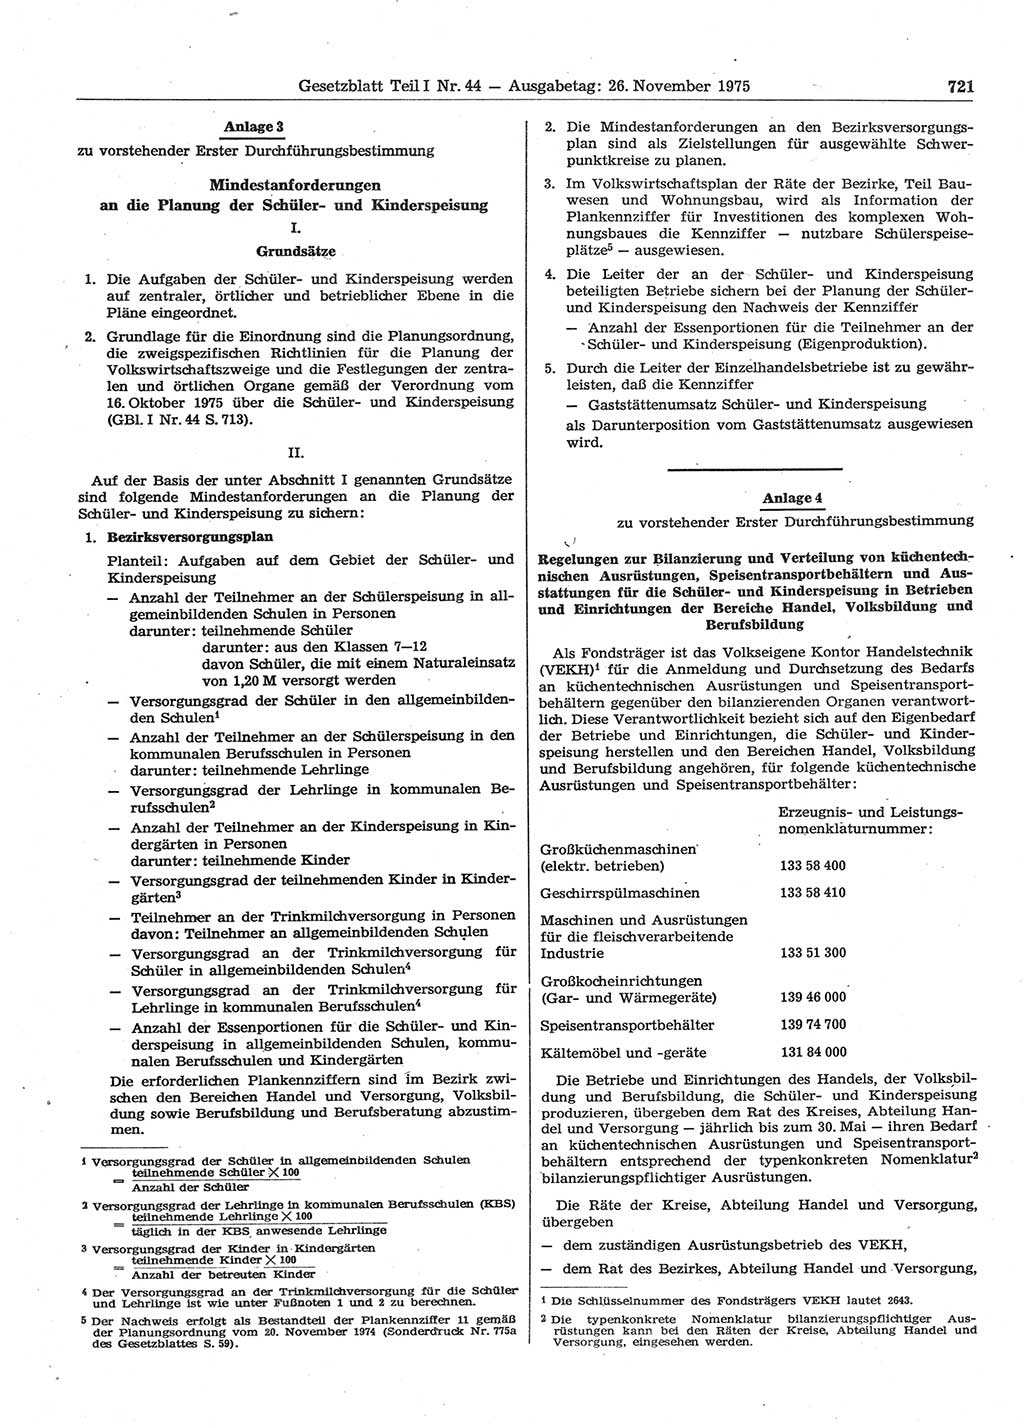 Gesetzblatt (GBl.) der Deutschen Demokratischen Republik (DDR) Teil Ⅰ 1975, Seite 721 (GBl. DDR Ⅰ 1975, S. 721)